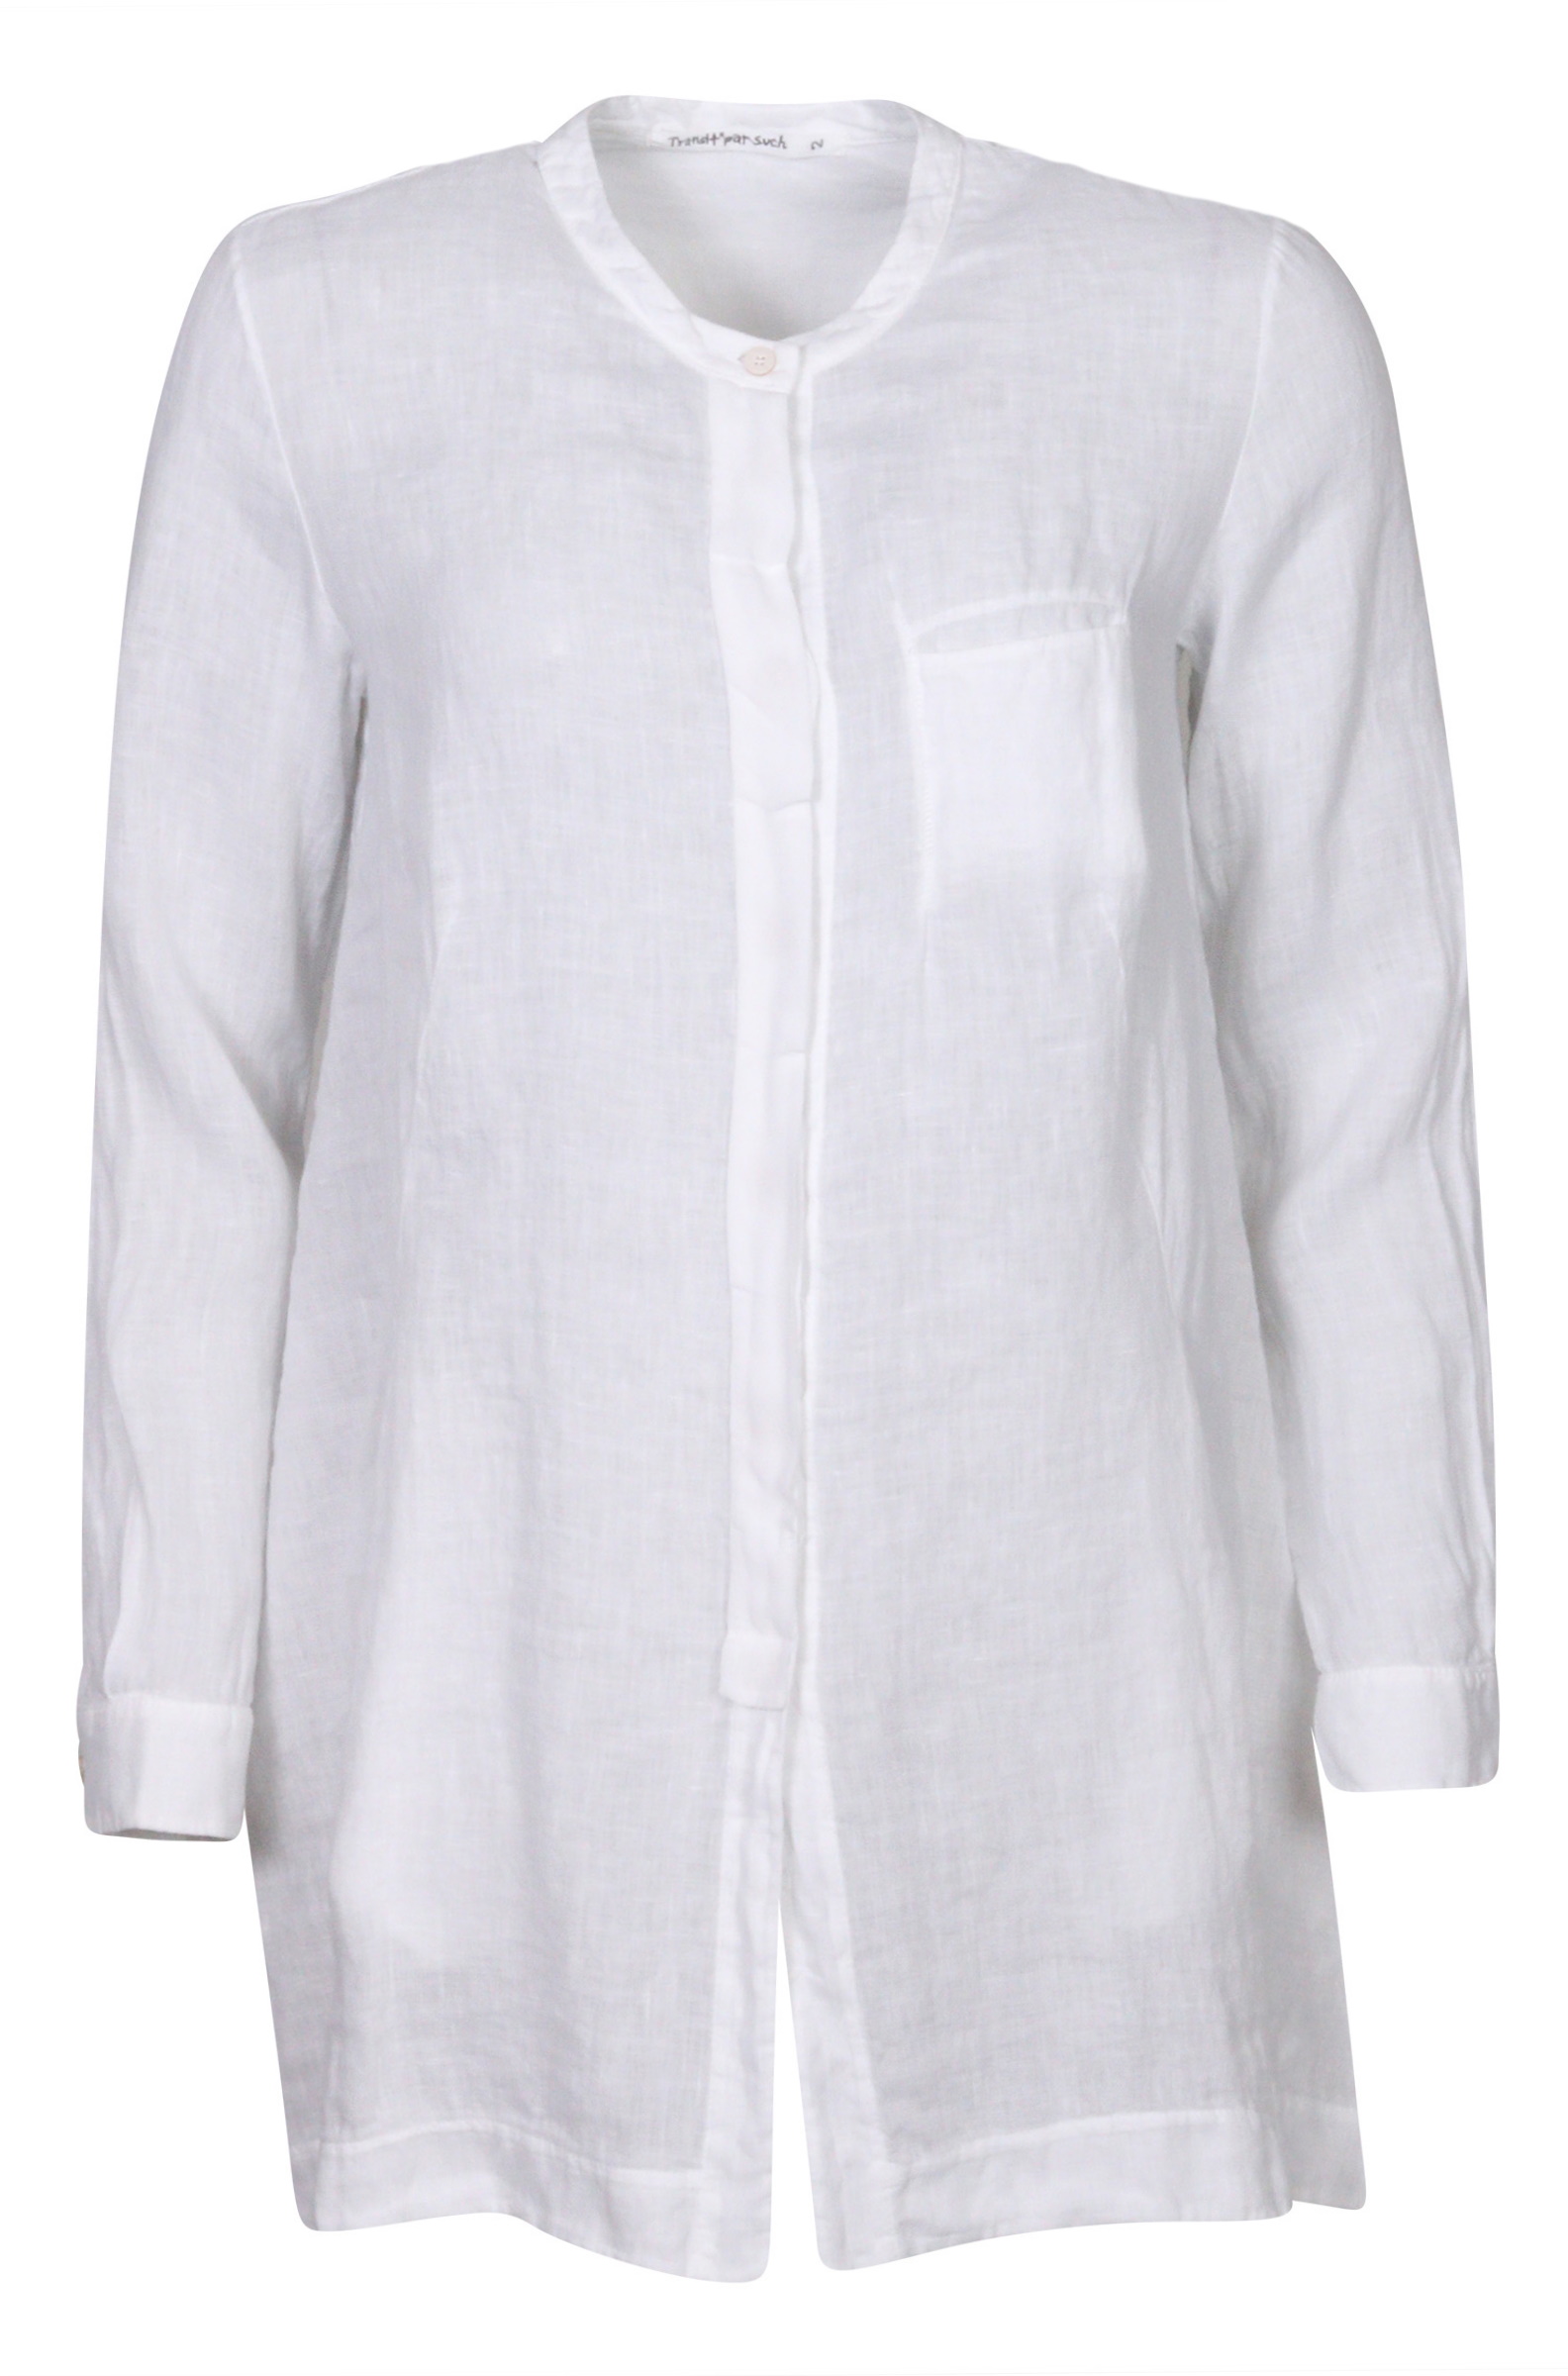 Transit Par Such Linen Shirt White S